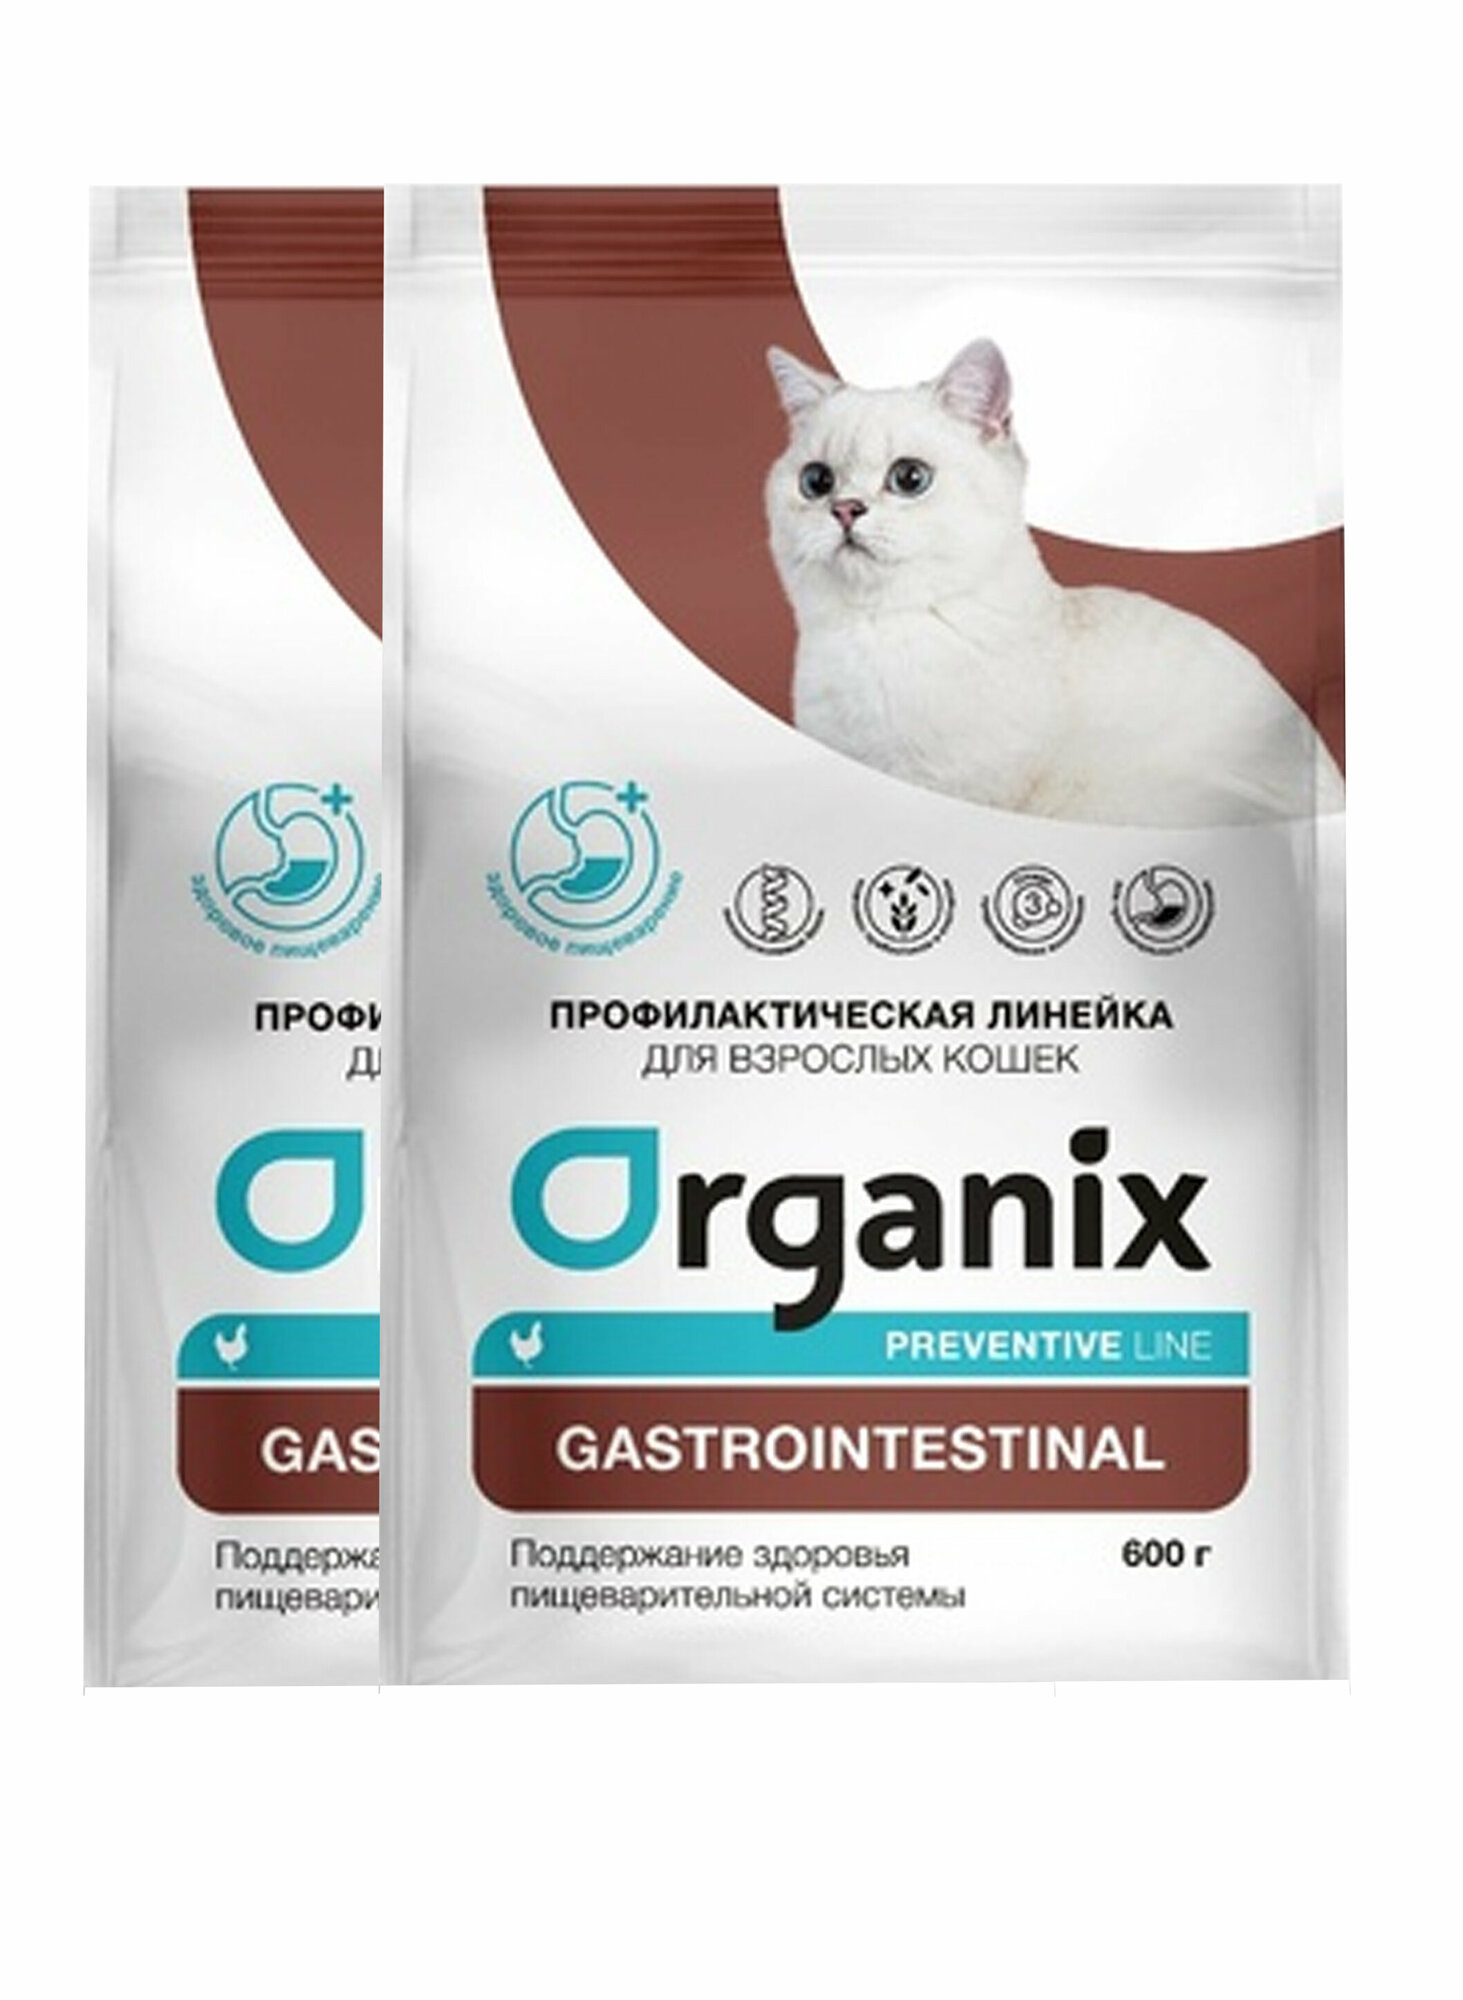 Organix Gastrointestinal сухой корм для кошек "Поддержание здоровья пищеварительной системы" 2 кг х 2шт.